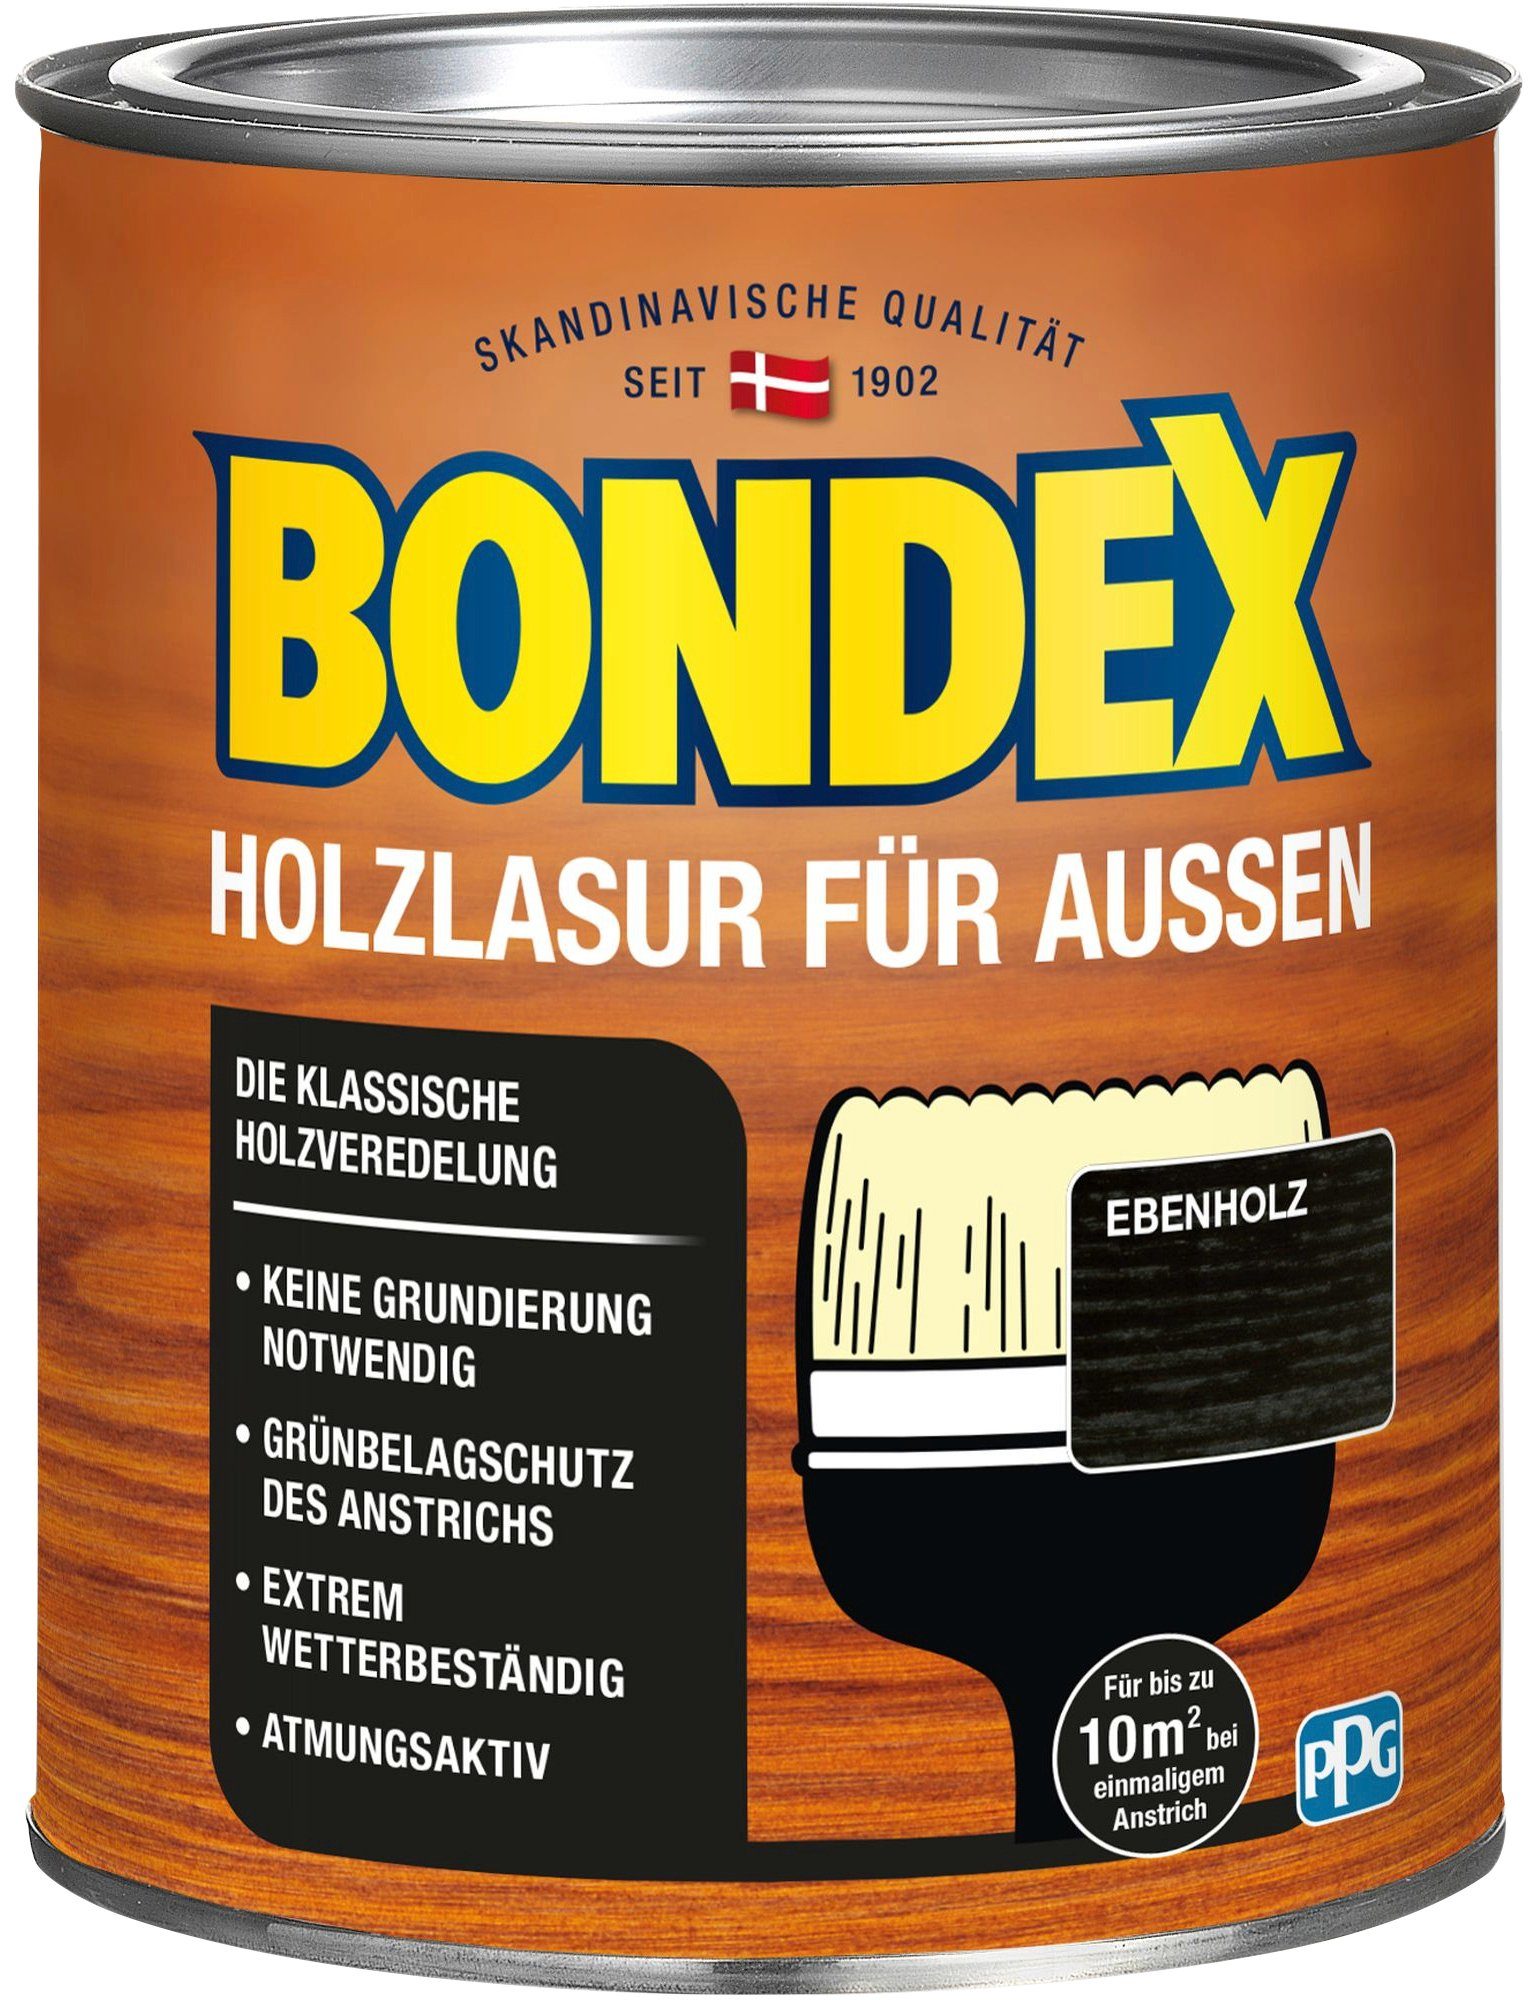 Bondex Holzschutzlasur HOLZLASUR FÜR versch. Holzverkleidung, AUSSEN, Ebenholz Farbtönen in atmungsaktiv, Wetterschutz